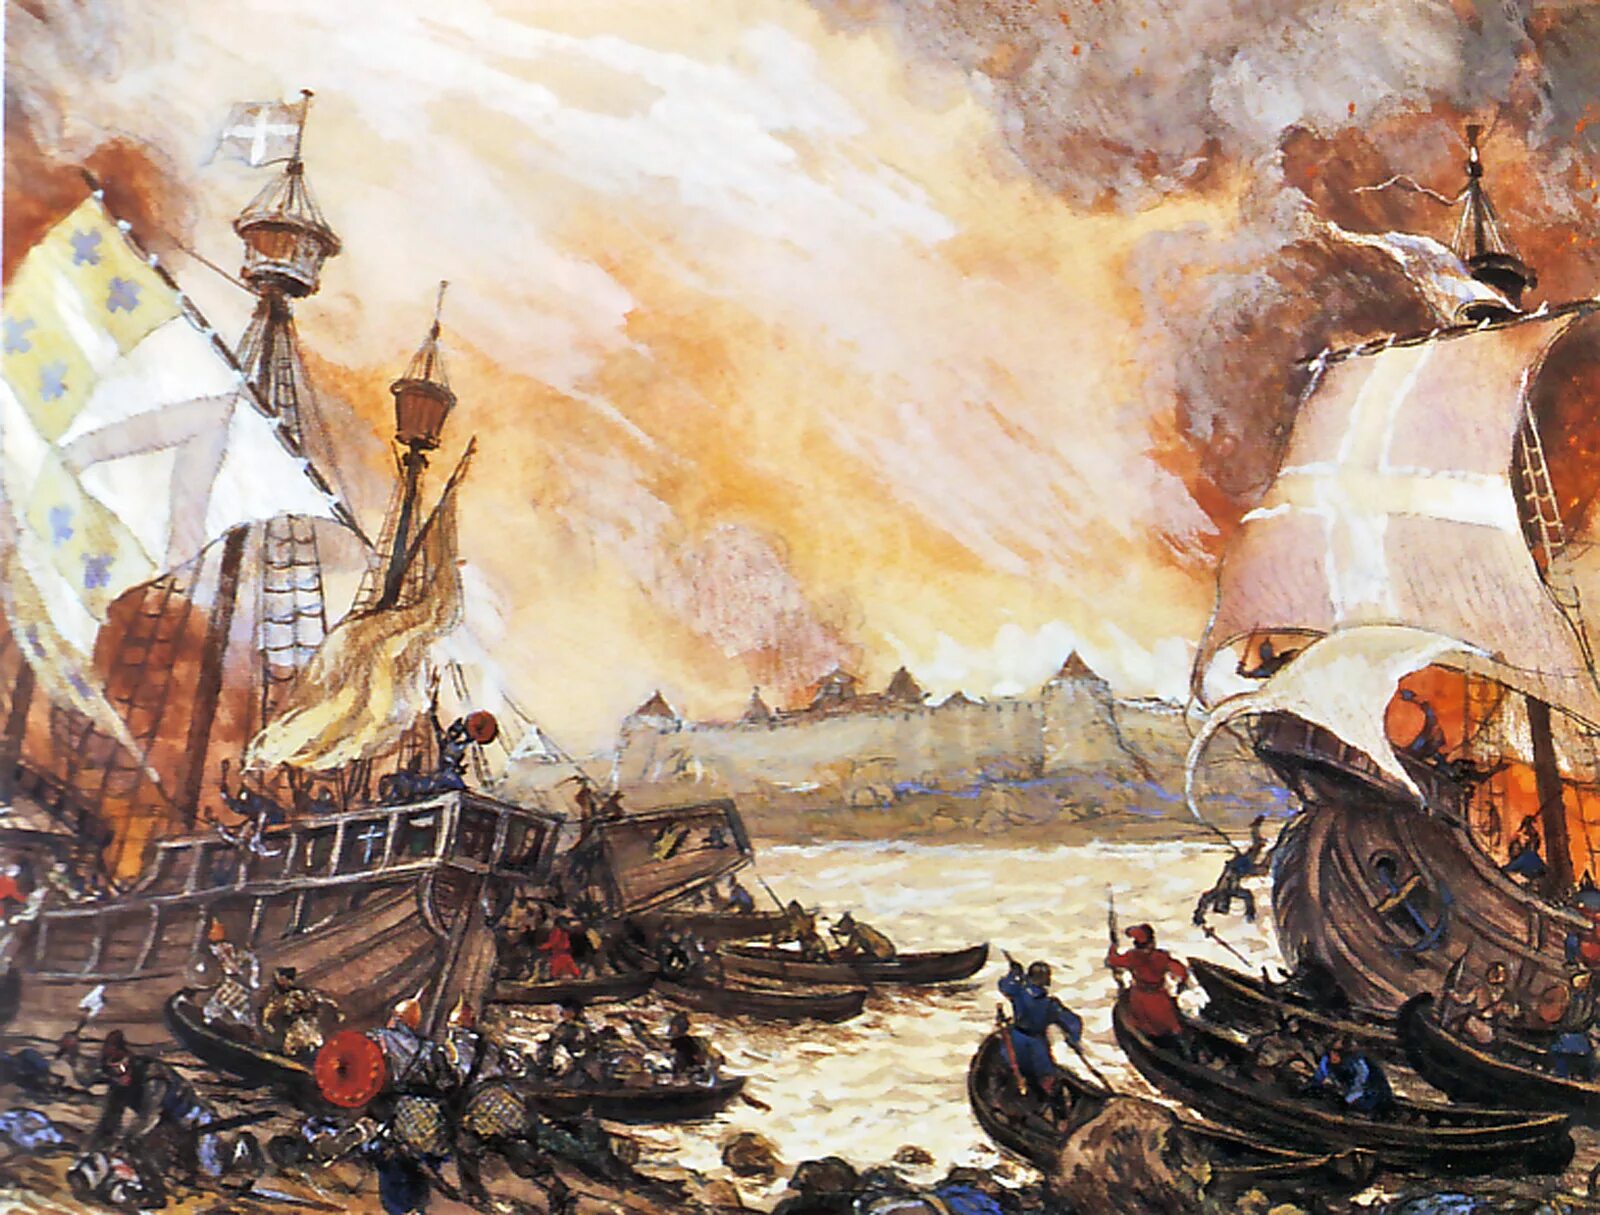 Захват швеции. Сражение новгородцев со шведами у крепости Ладога в 1164 году. Невская битва корабли Шведов.